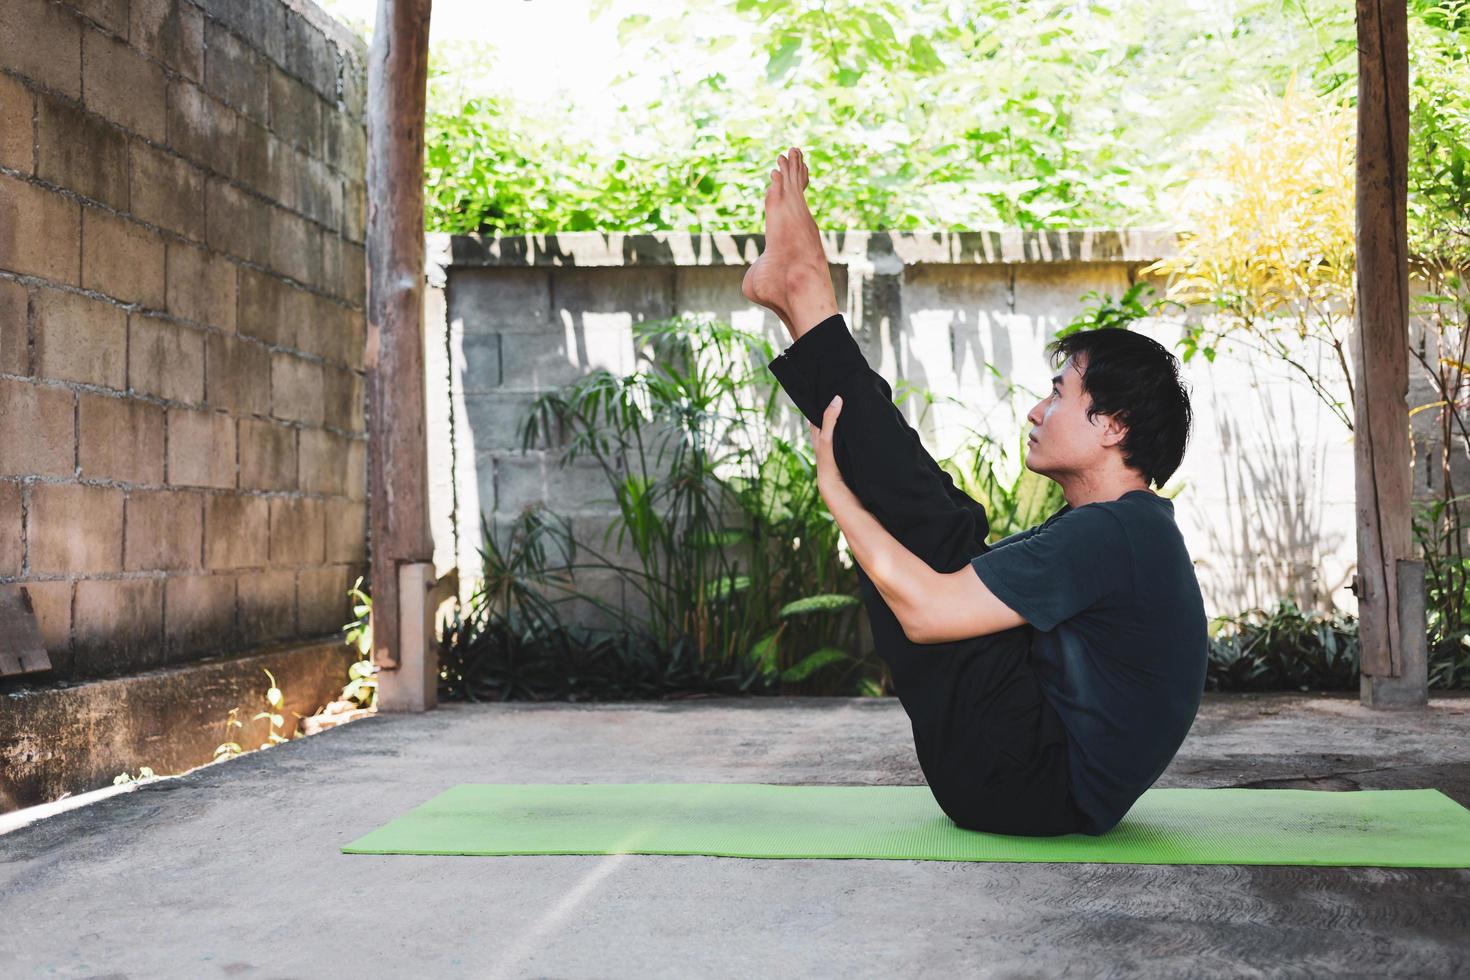 concept de vie saine d'un jeune homme asiatique pratiquant le yoga asana paripurna navasana pose ou pose de bateau complet, s'entraîne et pose sur un tapis de yoga vert. exercice extérieur dans le jardin. mode de vie sain. photo